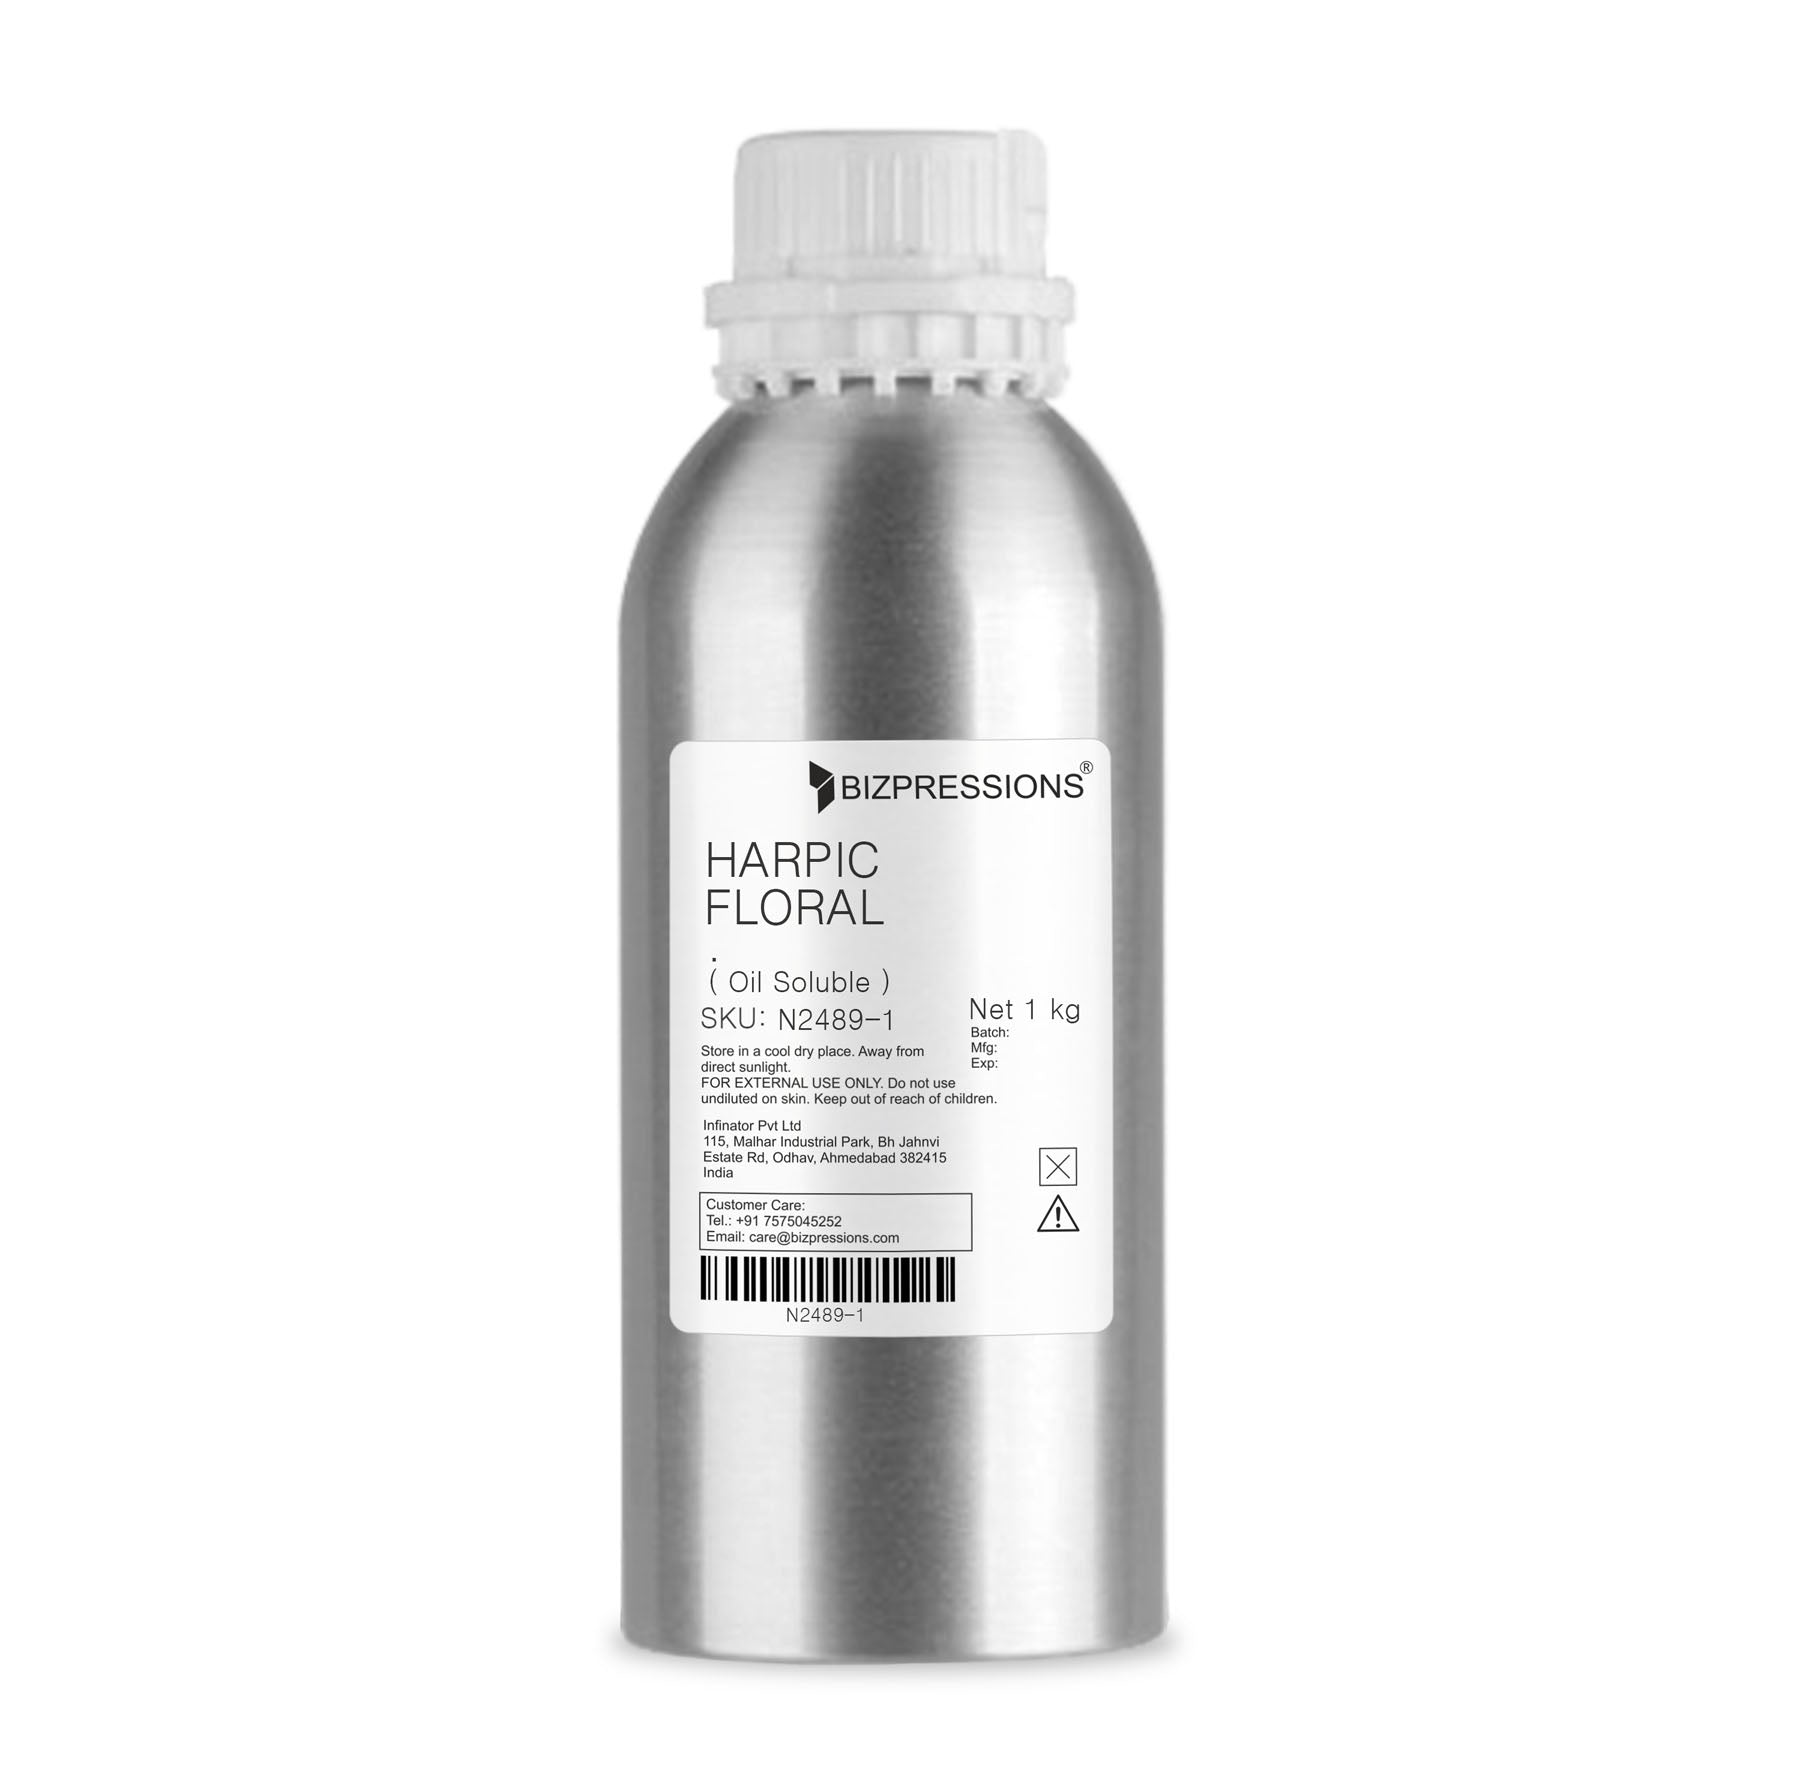 HARPIC FLORAL - Fragrance ( Oil Soluble ) - 1 kg